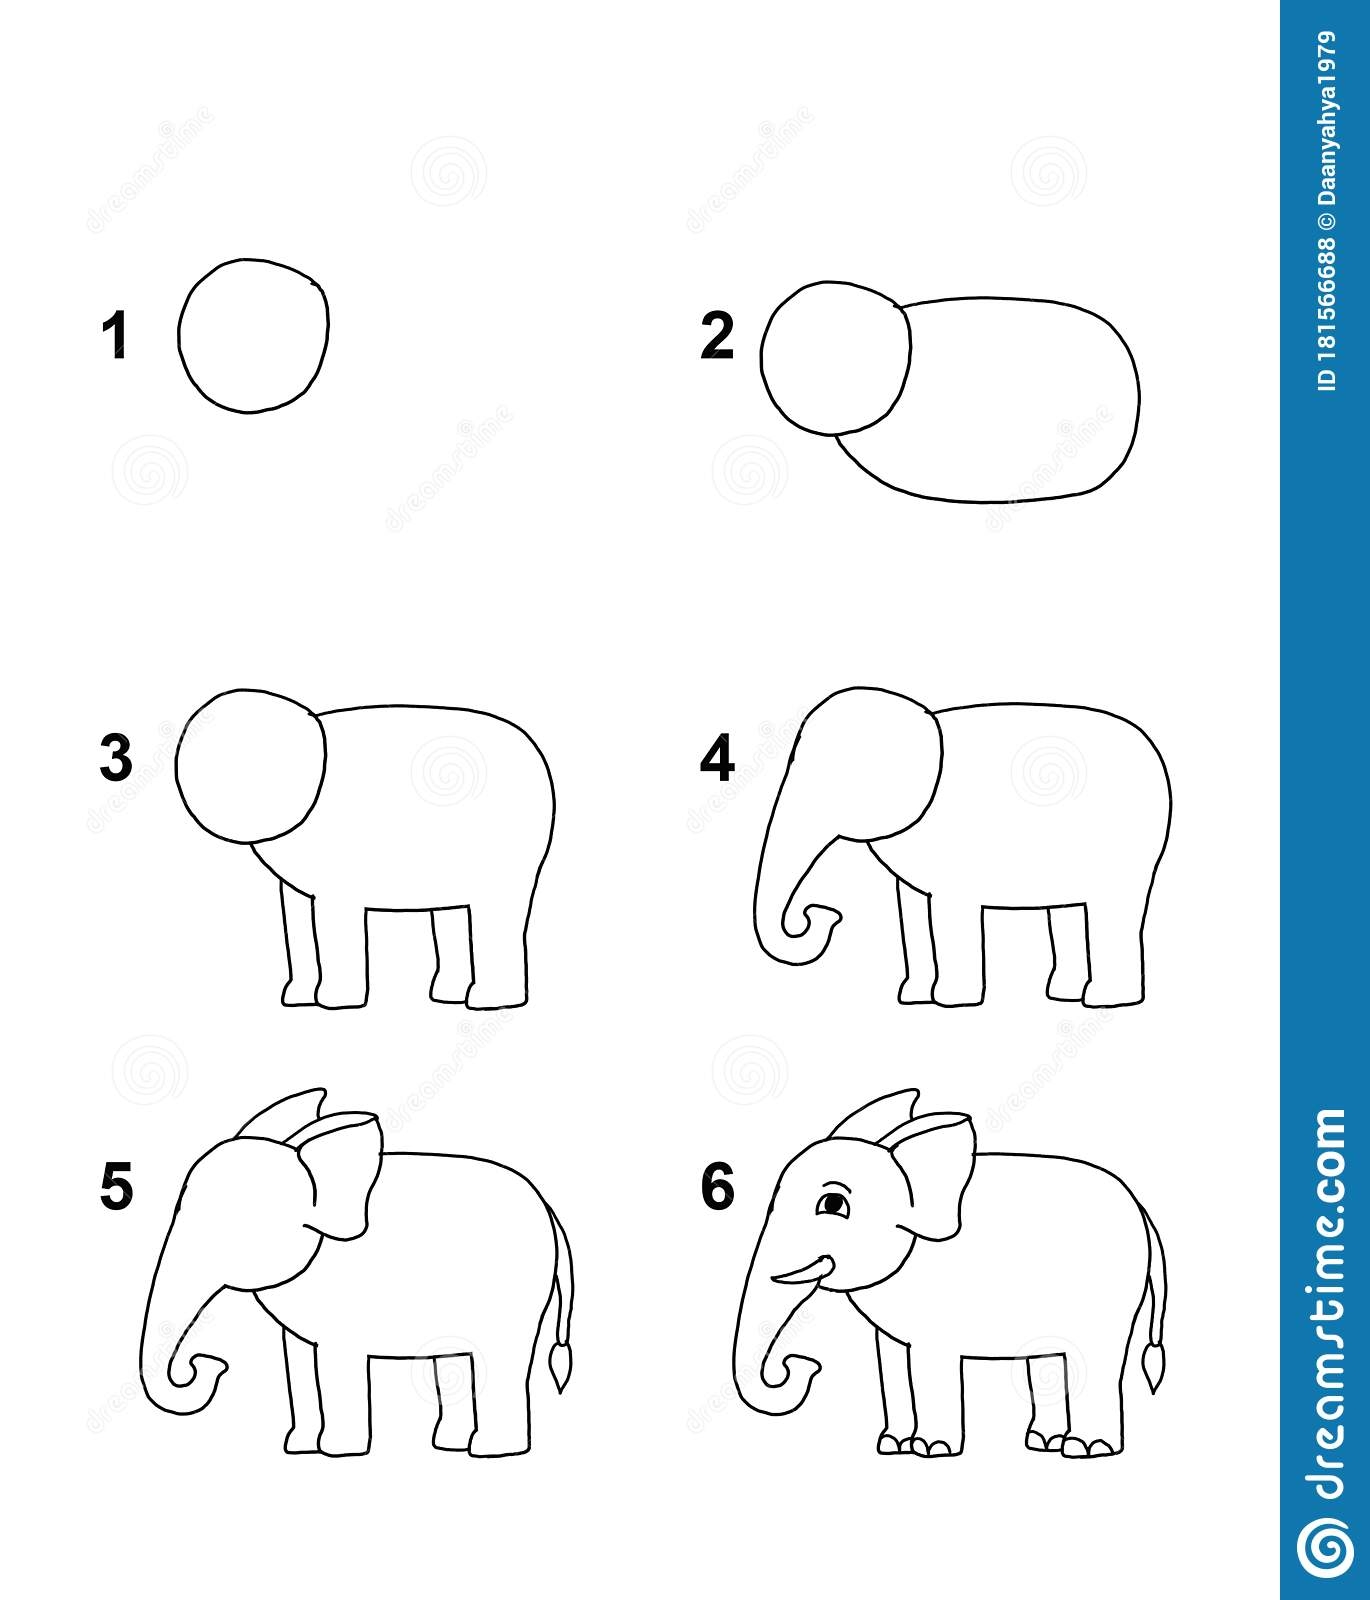 Как нарисовать слона из богатырей